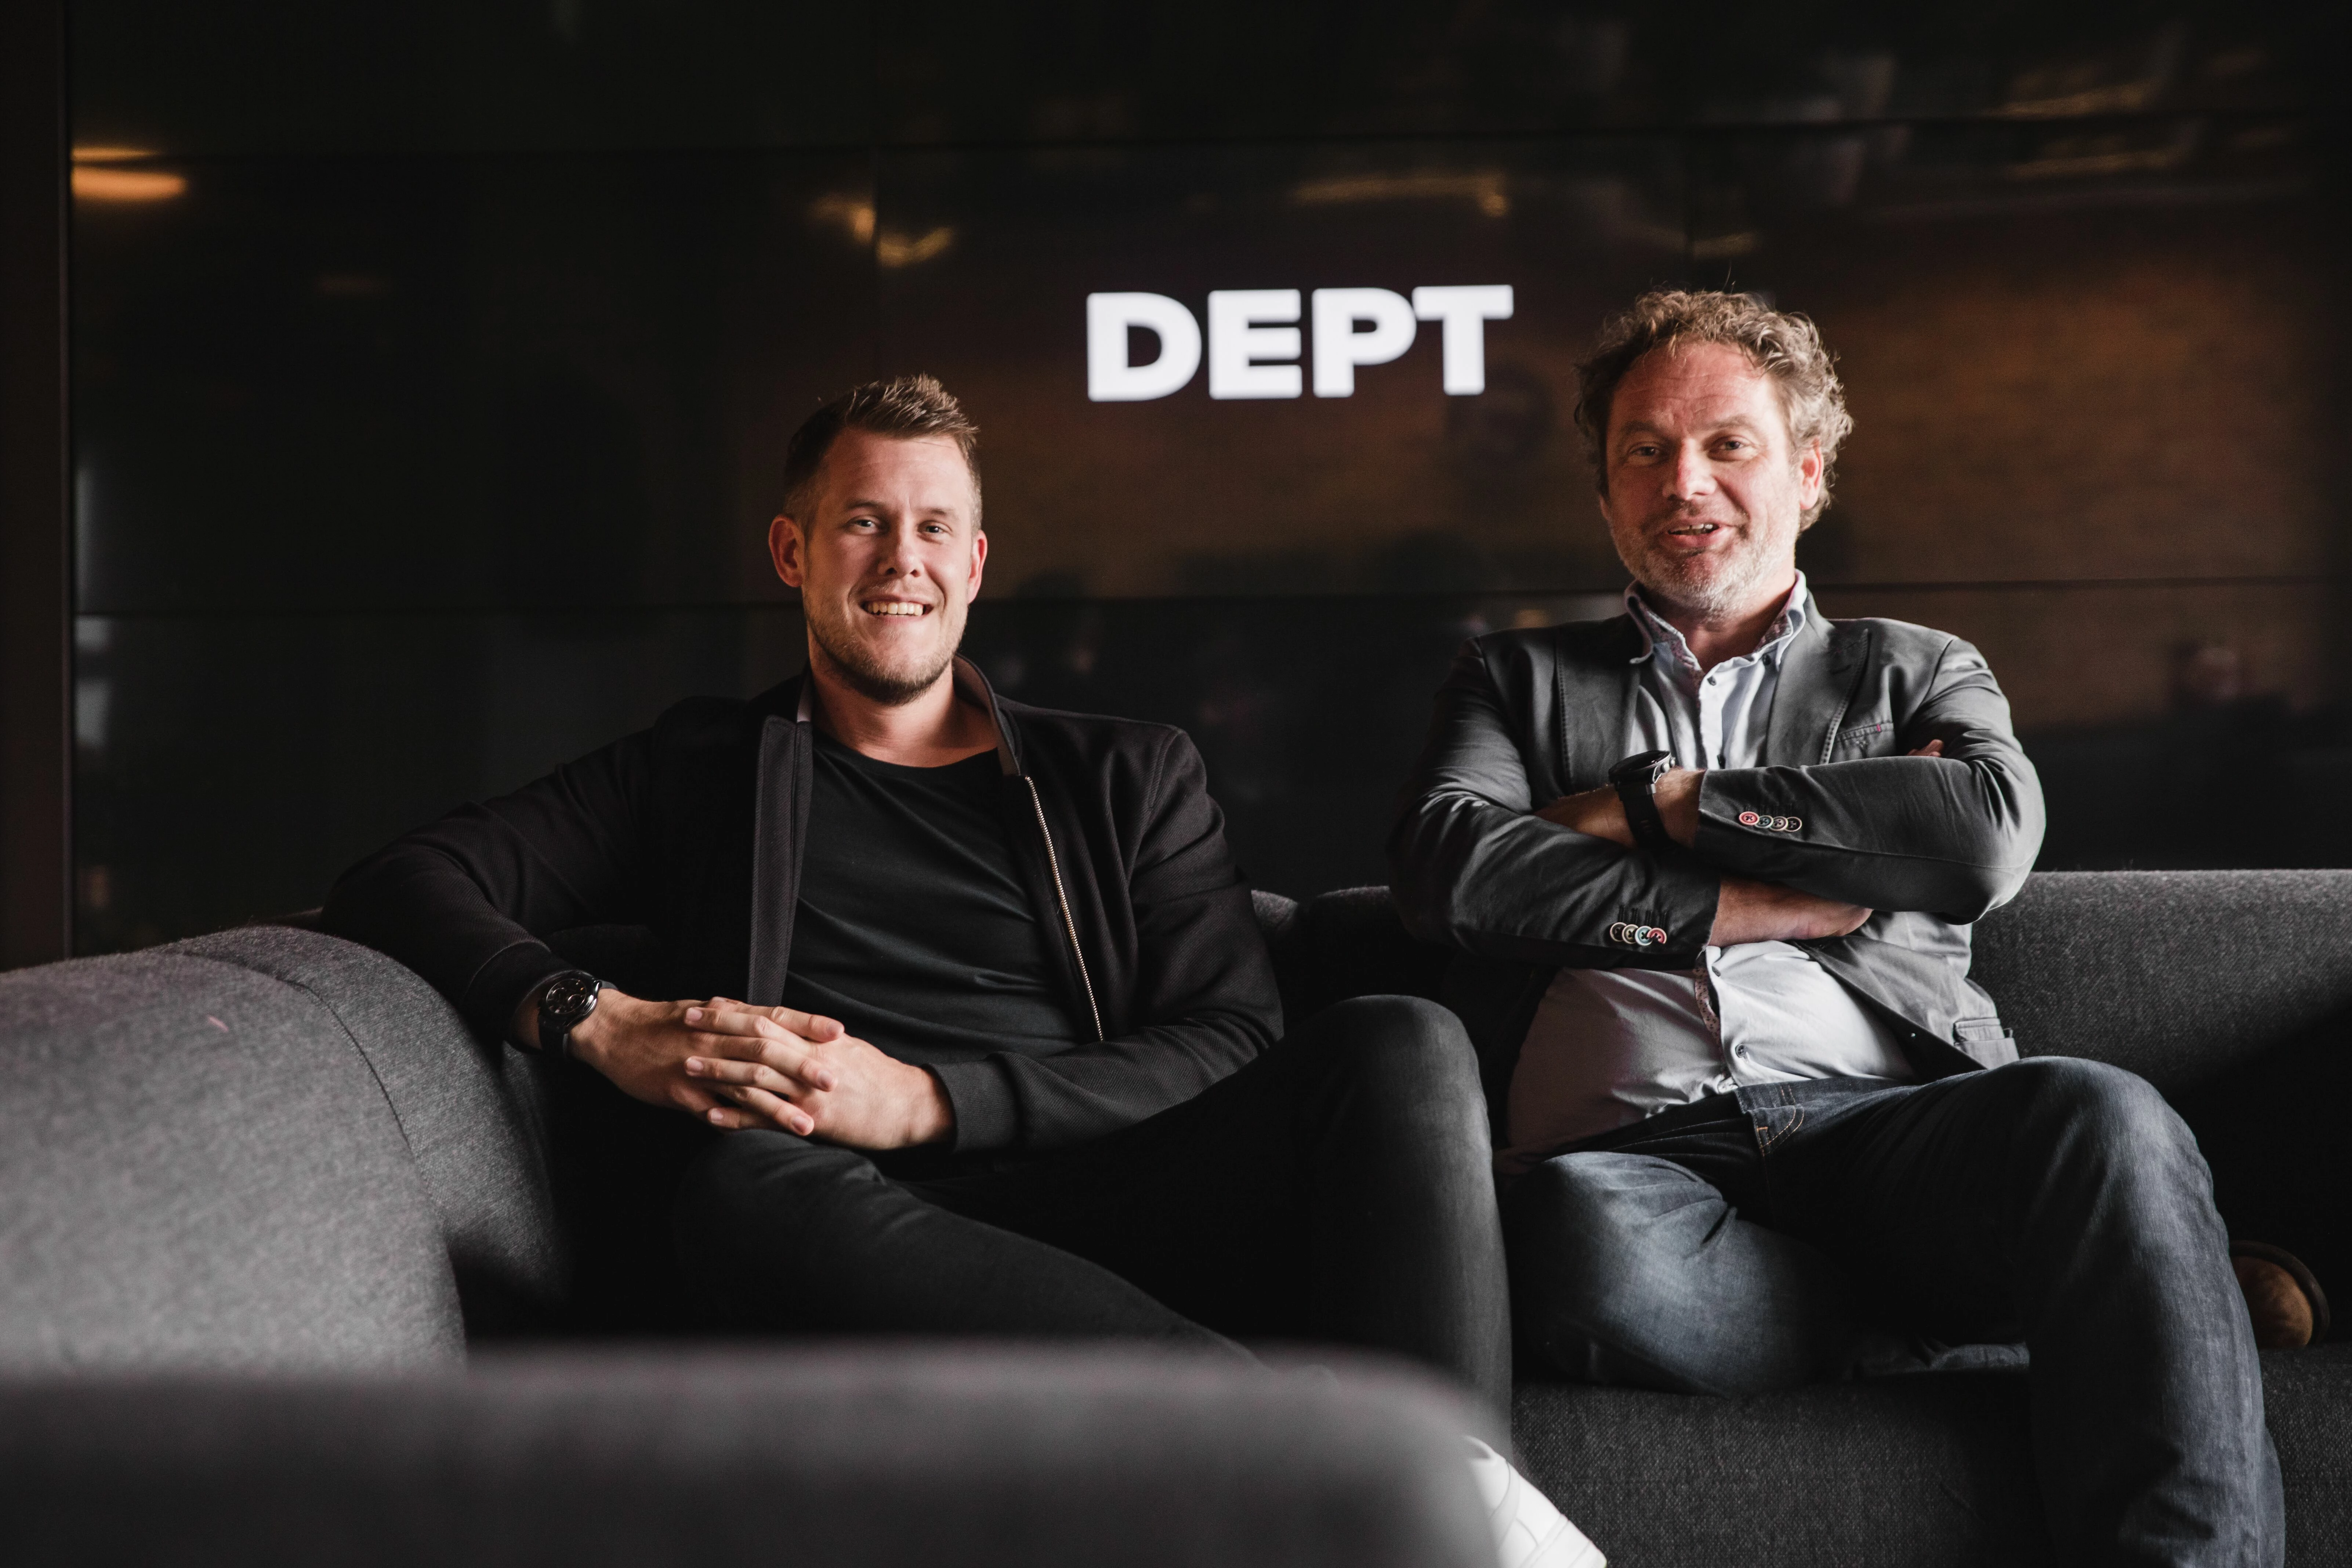 (left) Jake Welsh, the founder of e3creative, and (right) Managing Director of Dept UK & US, Jasper van de Luijtgaarden